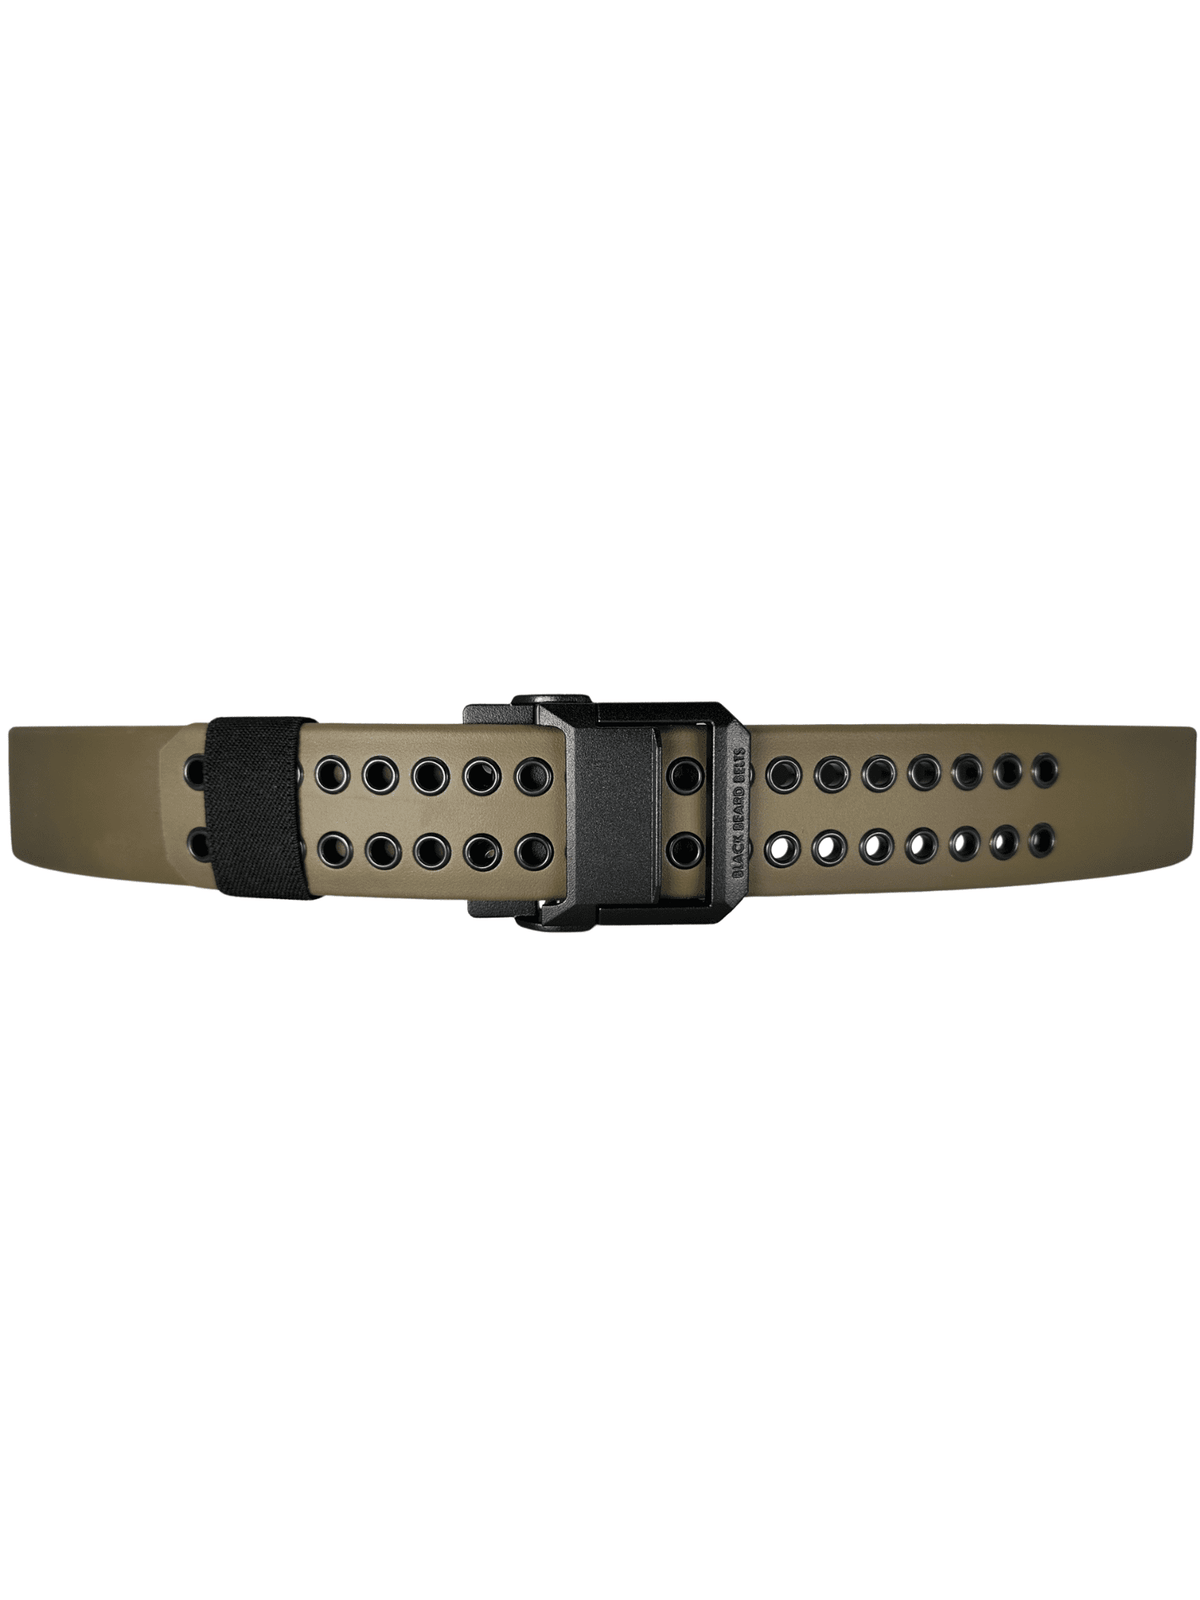 commando gun belt - 5